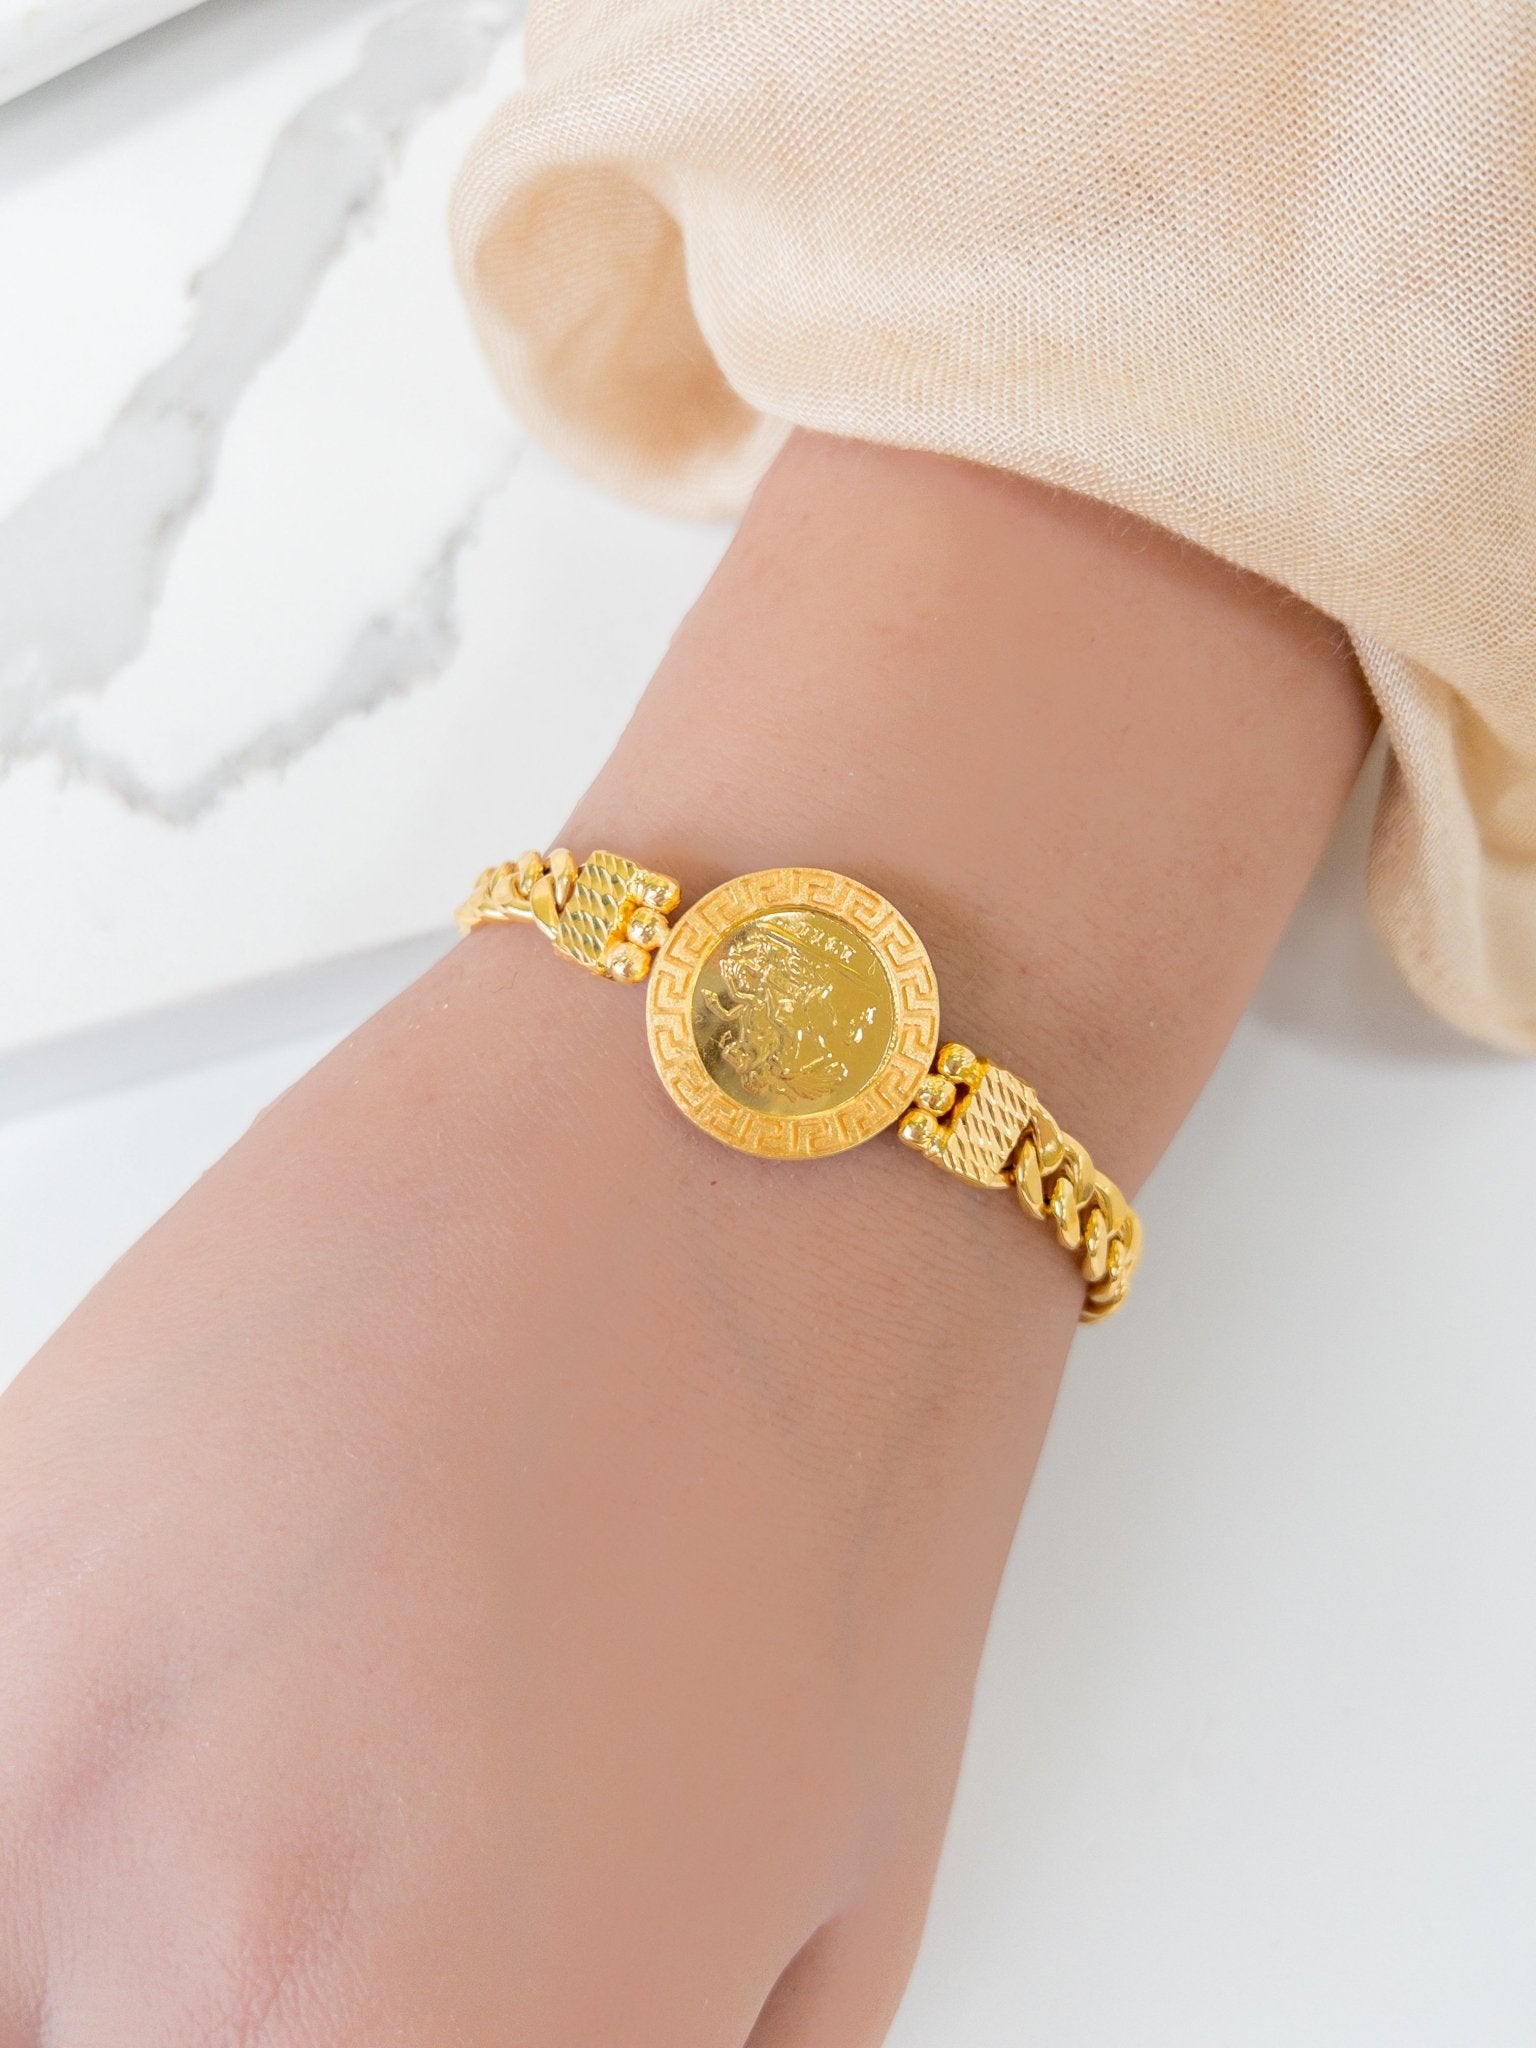 21k Gold Bracelets - Cleopatra Jewelers